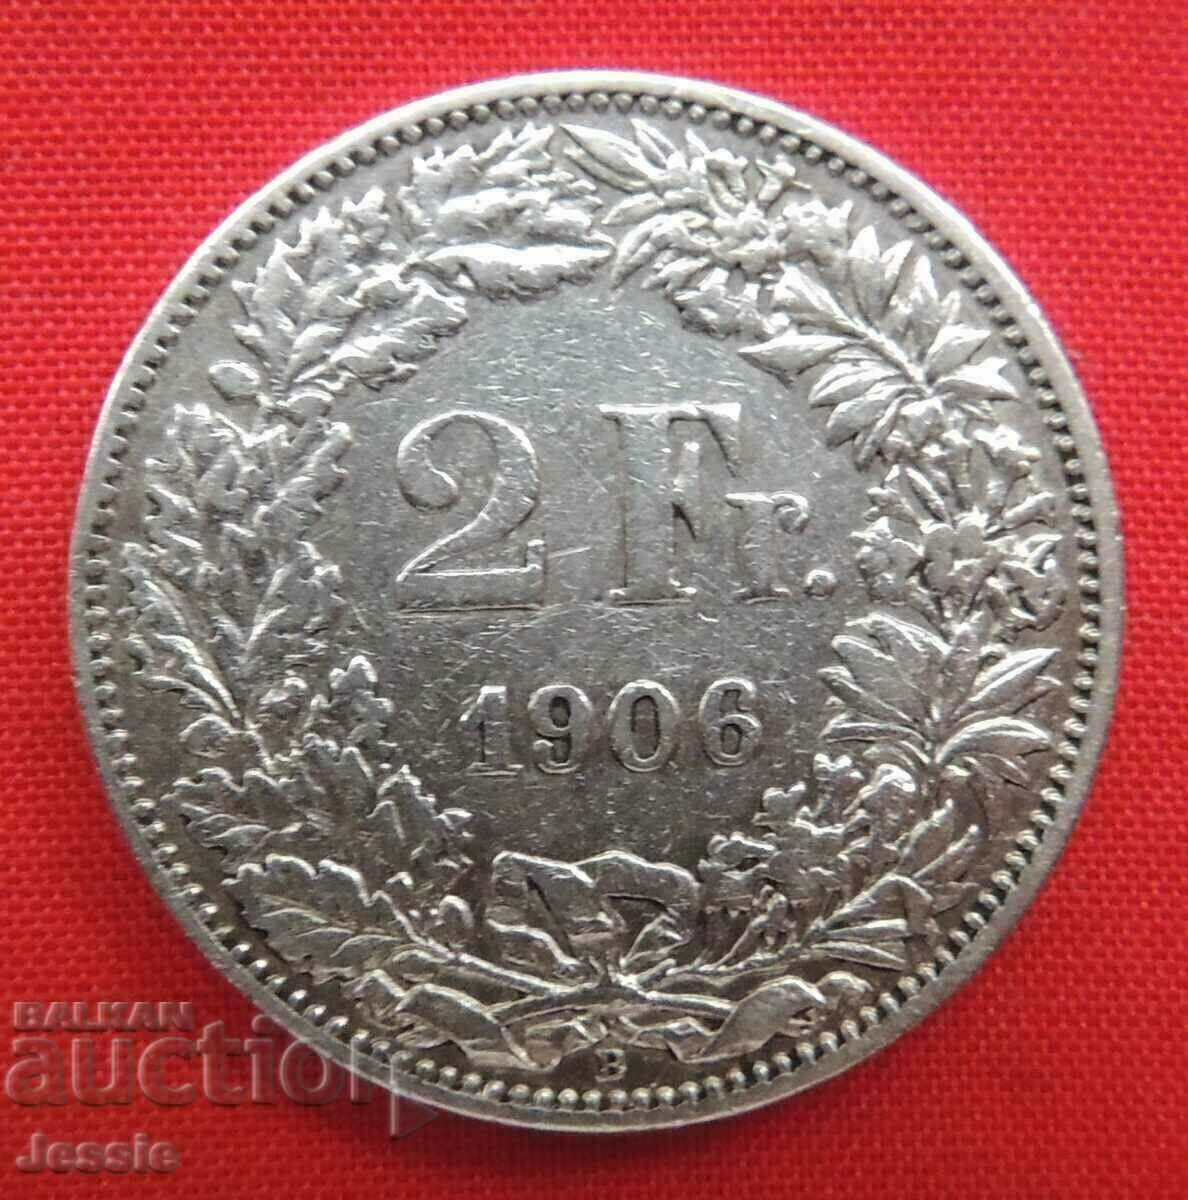 2 Франка 1906 B Швейцария сребро